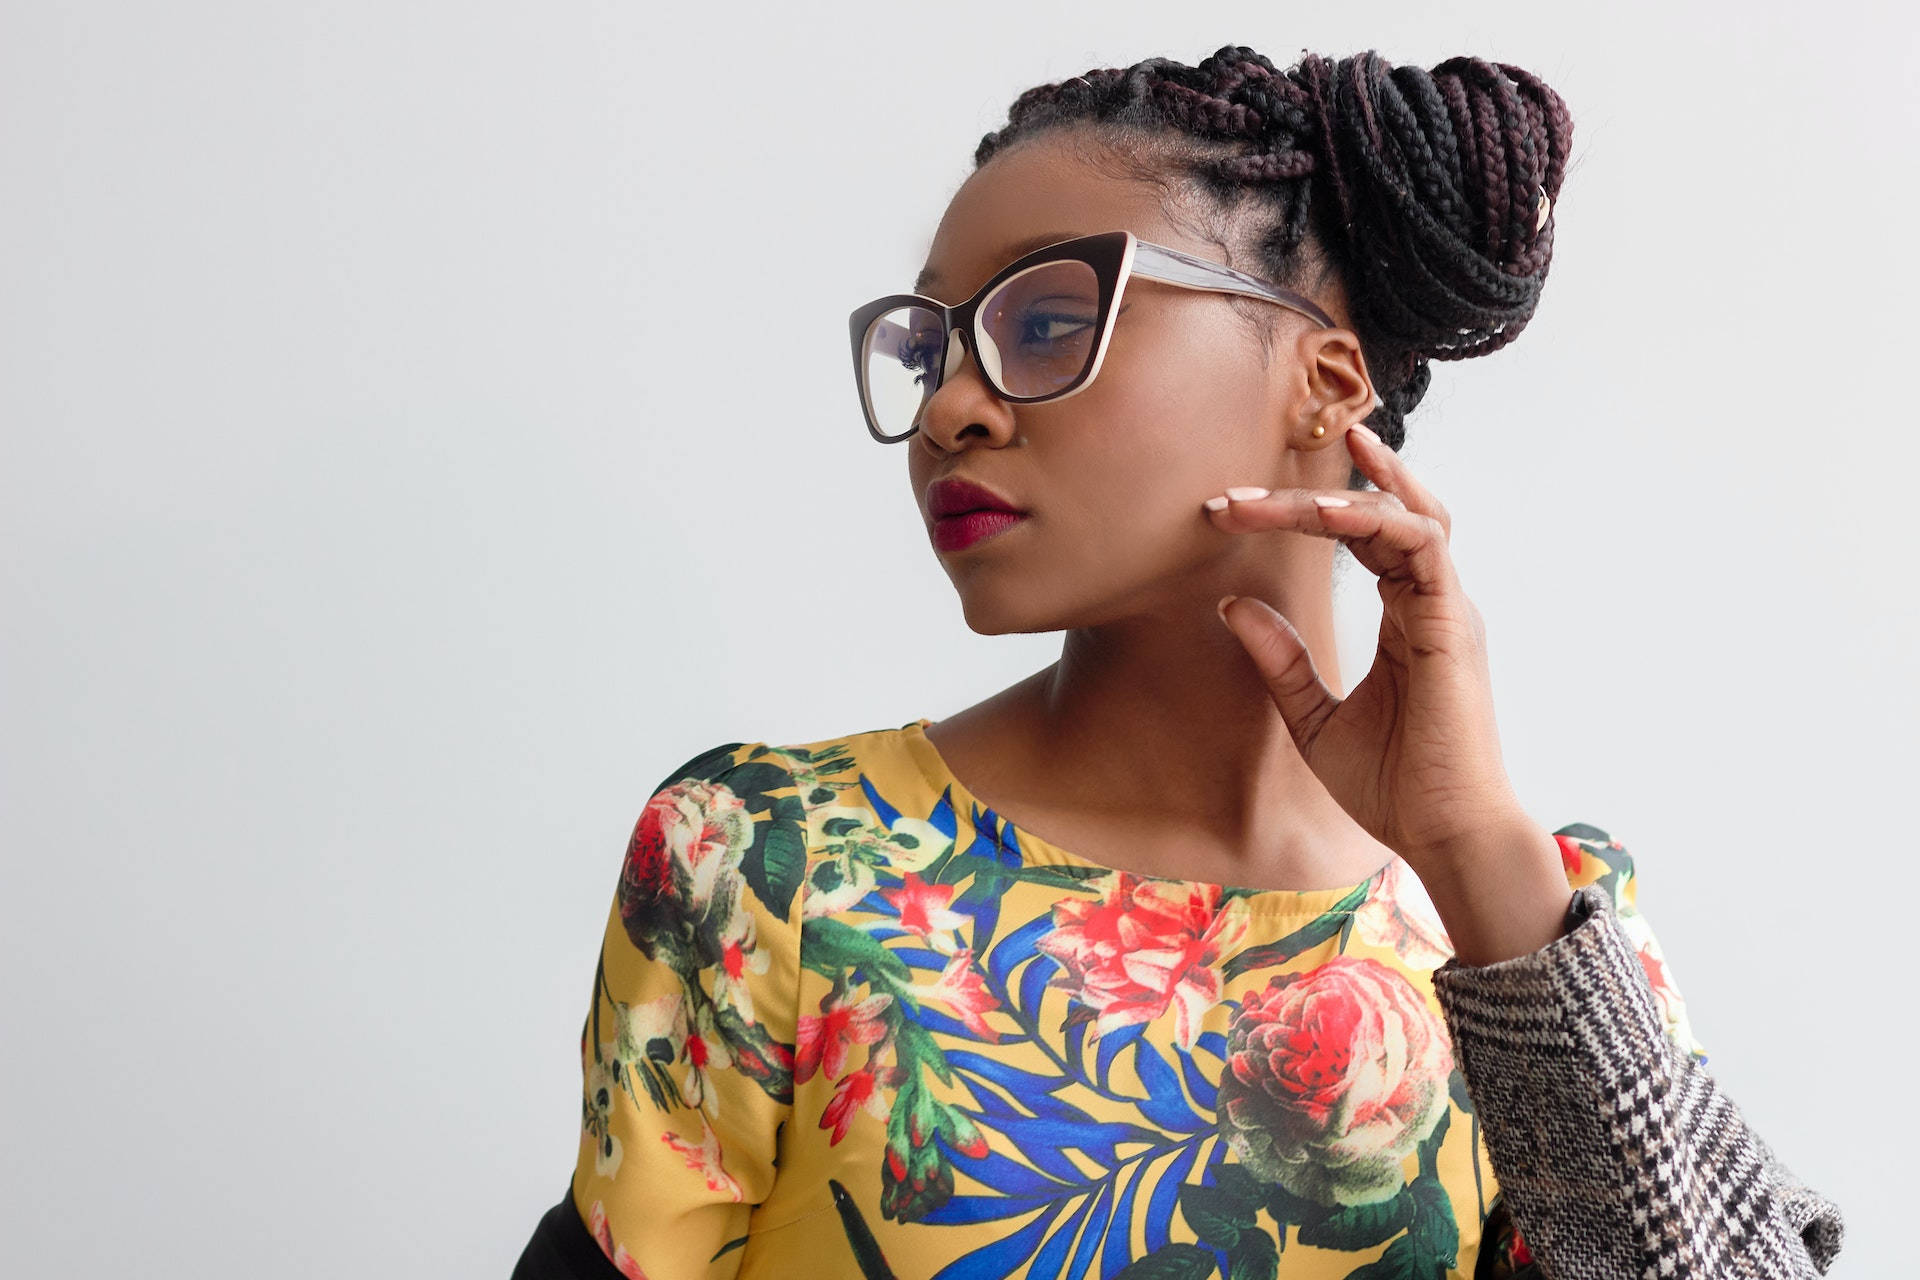 Sort kvinde afro flettet hårstil Wallpaper